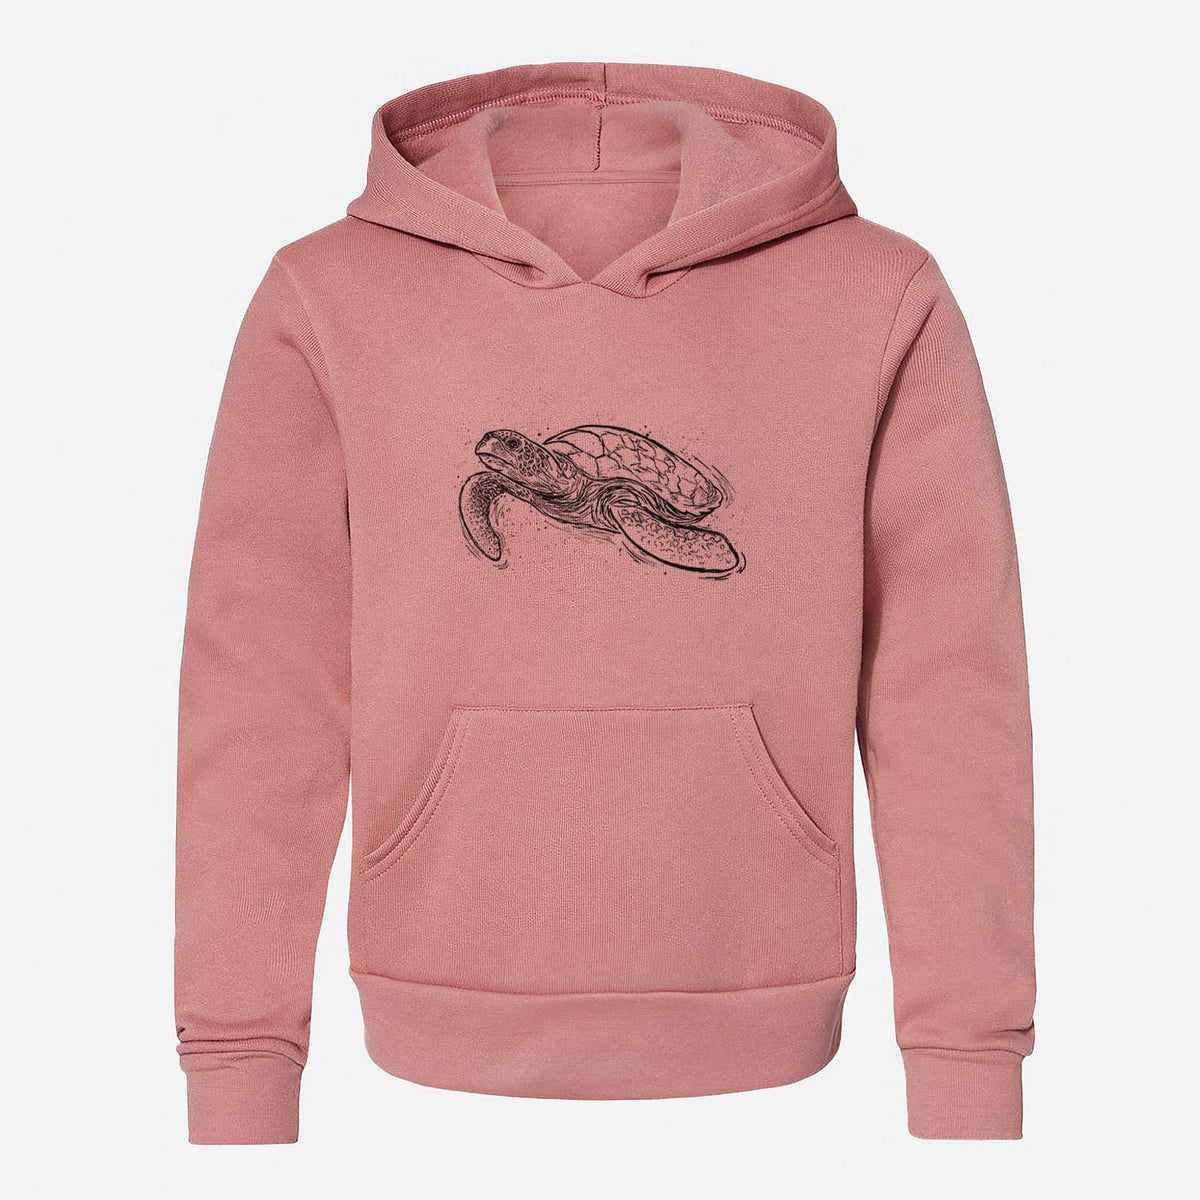 Hawksbill Sea Turtle - Eretmochelys imbricata - Youth Hoodie Sweatshirt